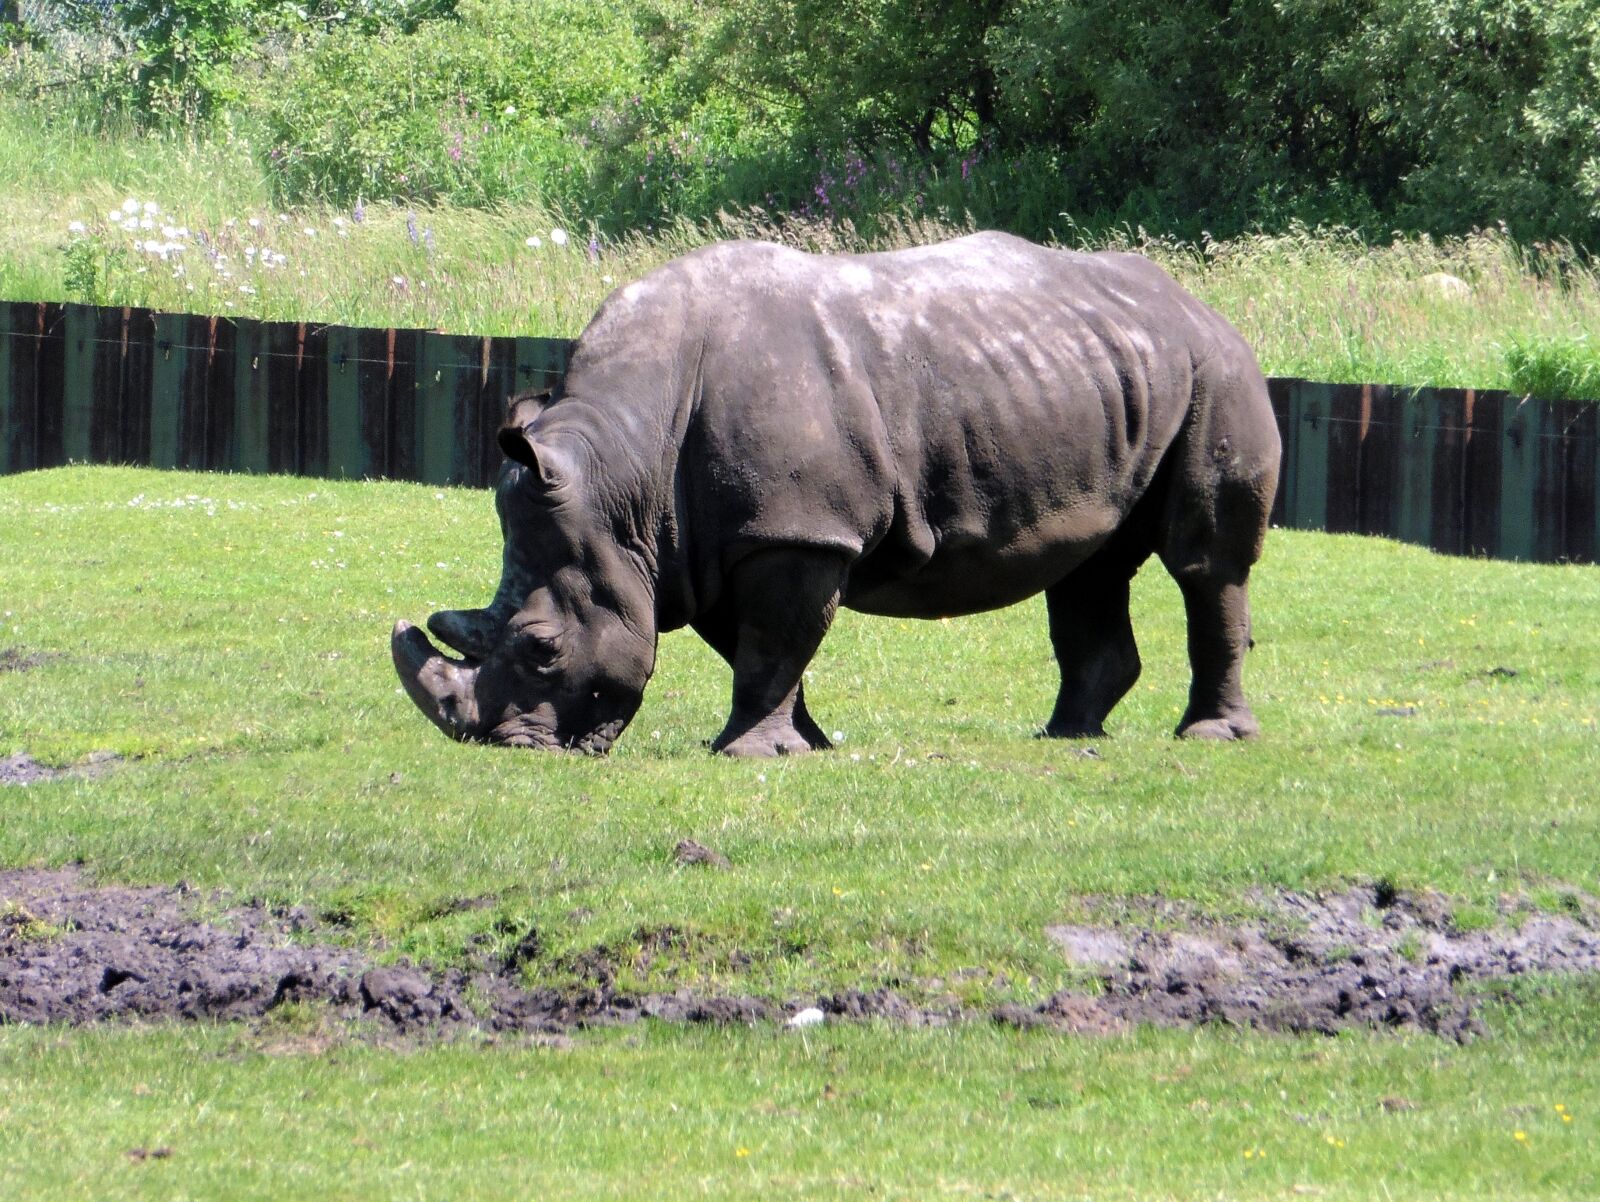 Panasonic DMC-TZ56 sample photo. "White rhino, zoo, rhino" photography